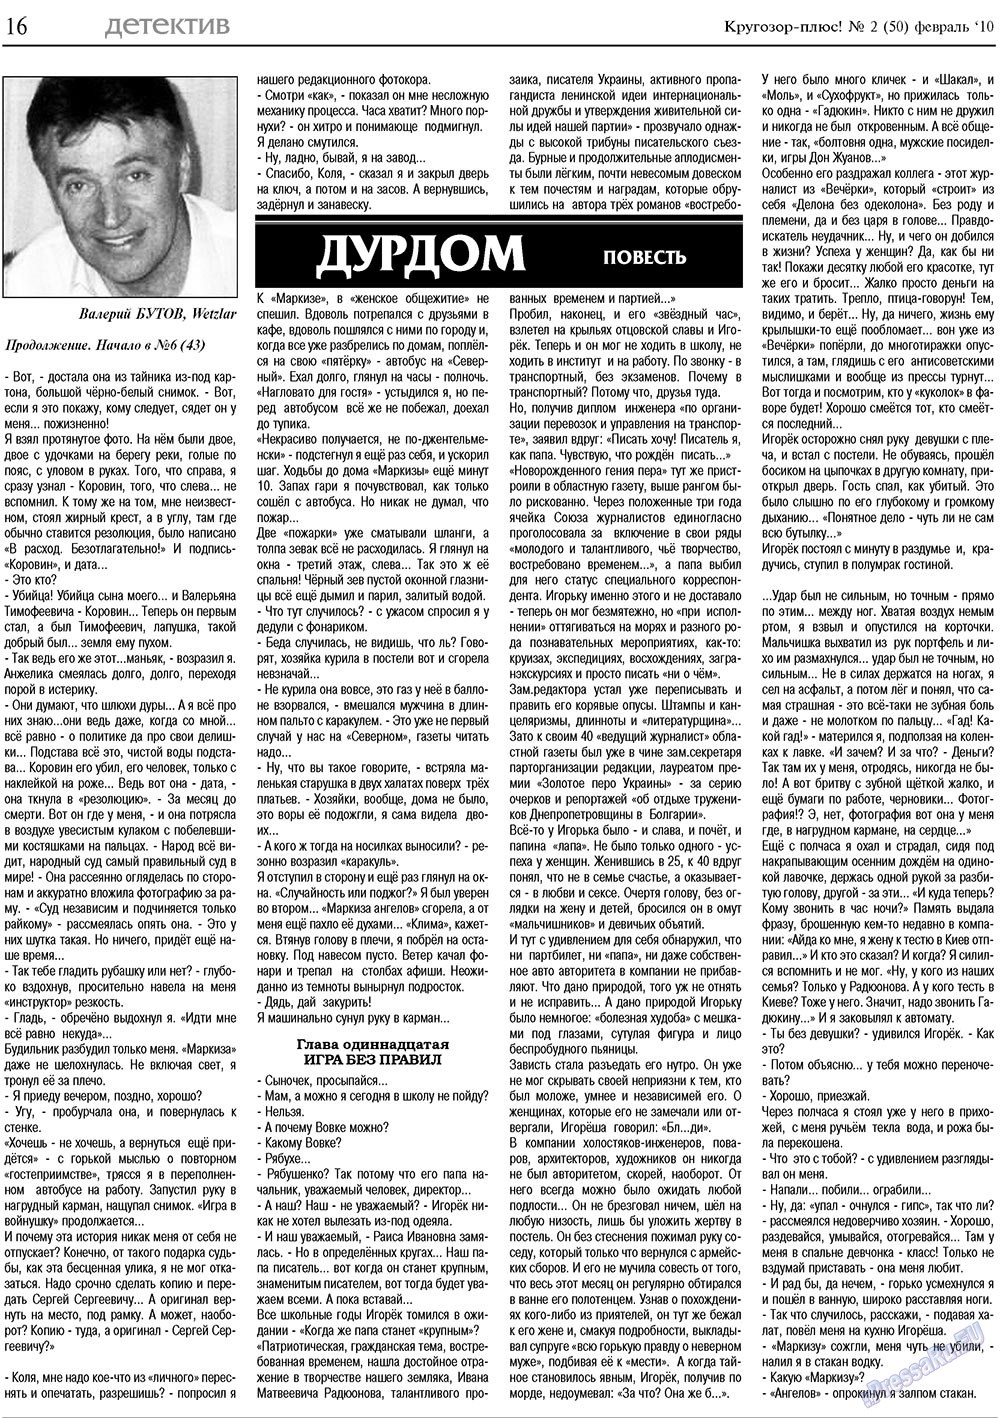 Кругозор плюс!, газета. 2010 №2 стр.16